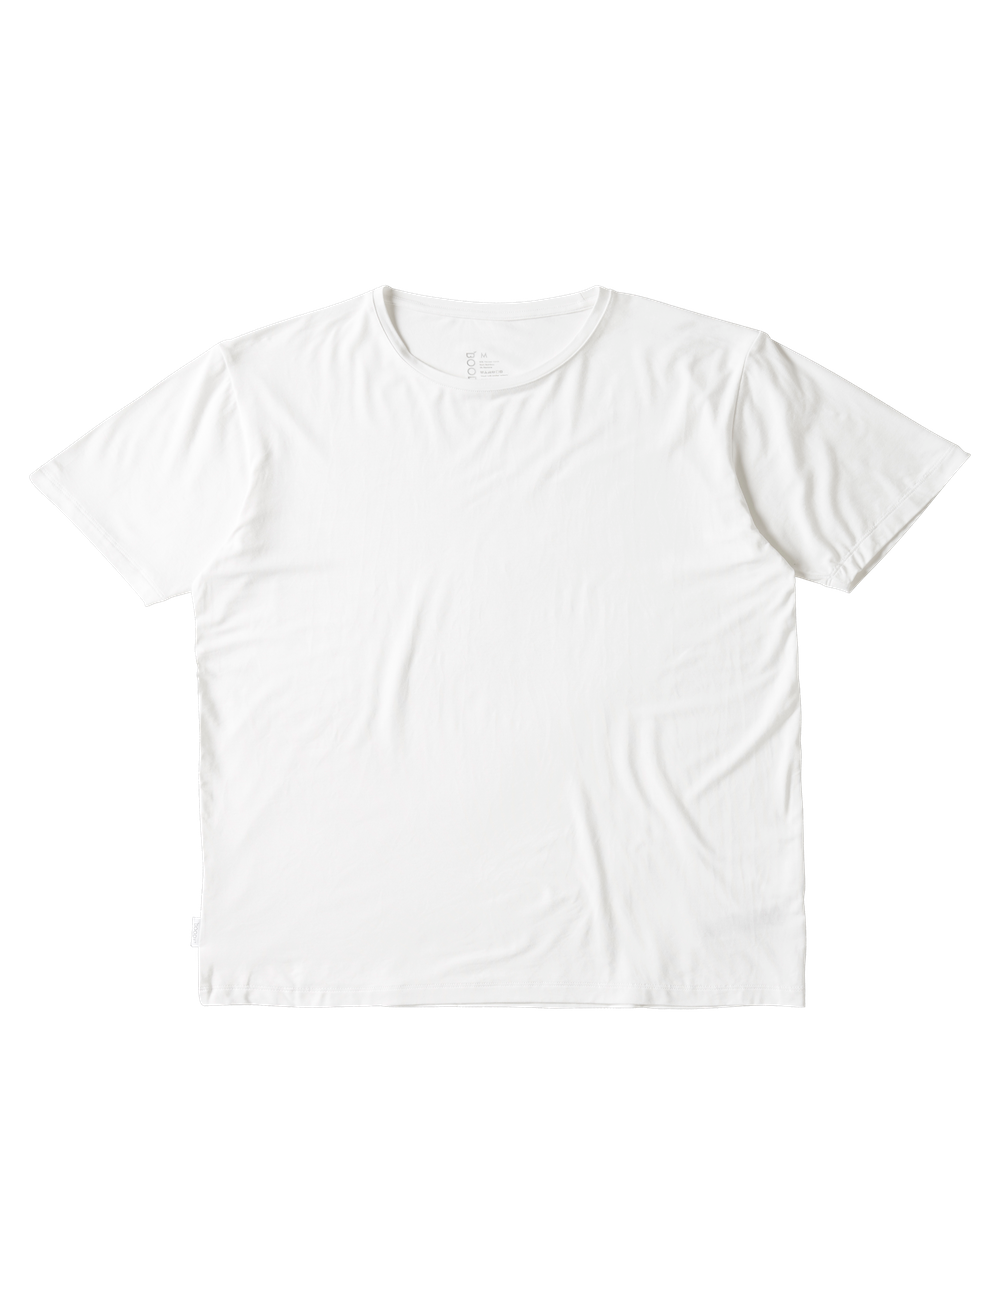 BOODY メンズウェア メンズ クルーネック Tシャツ (ホワイト/Lサイズ) CMWHLL